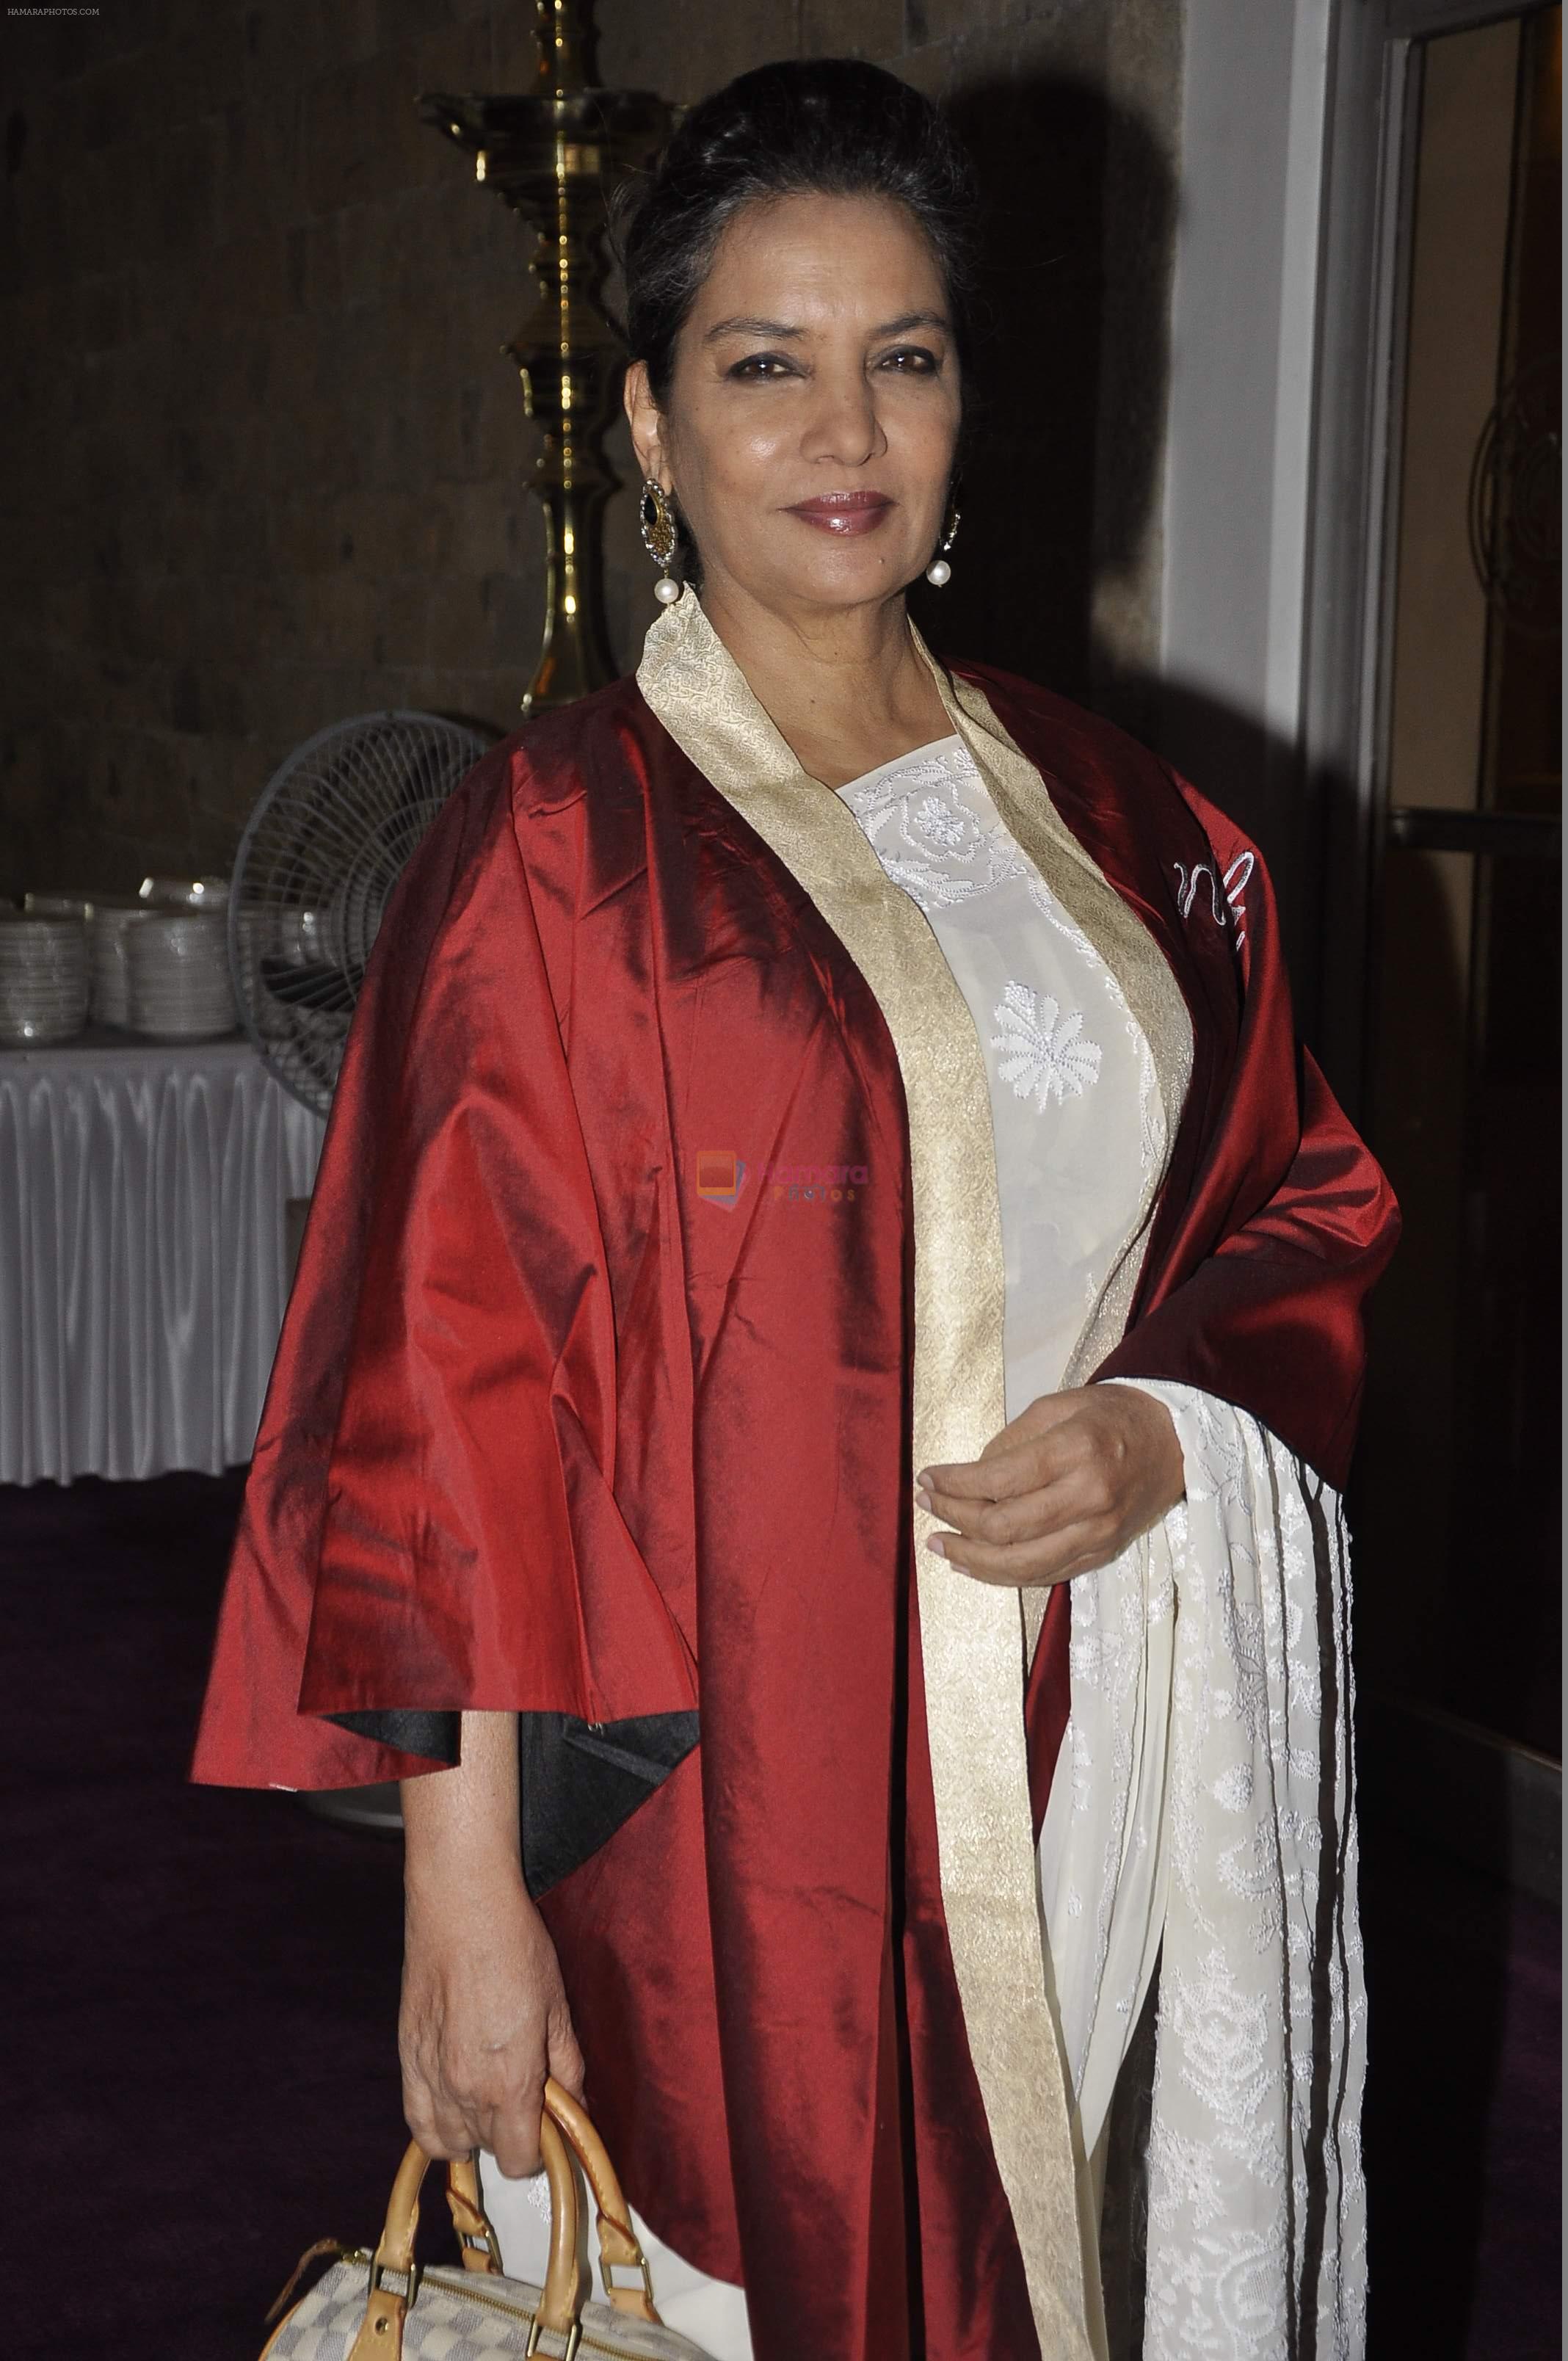 Shabana Azmi celebrating the success of Batch 2014 convocation ceremony and graduation show at NCPA, Mumbai on 25th May 2014